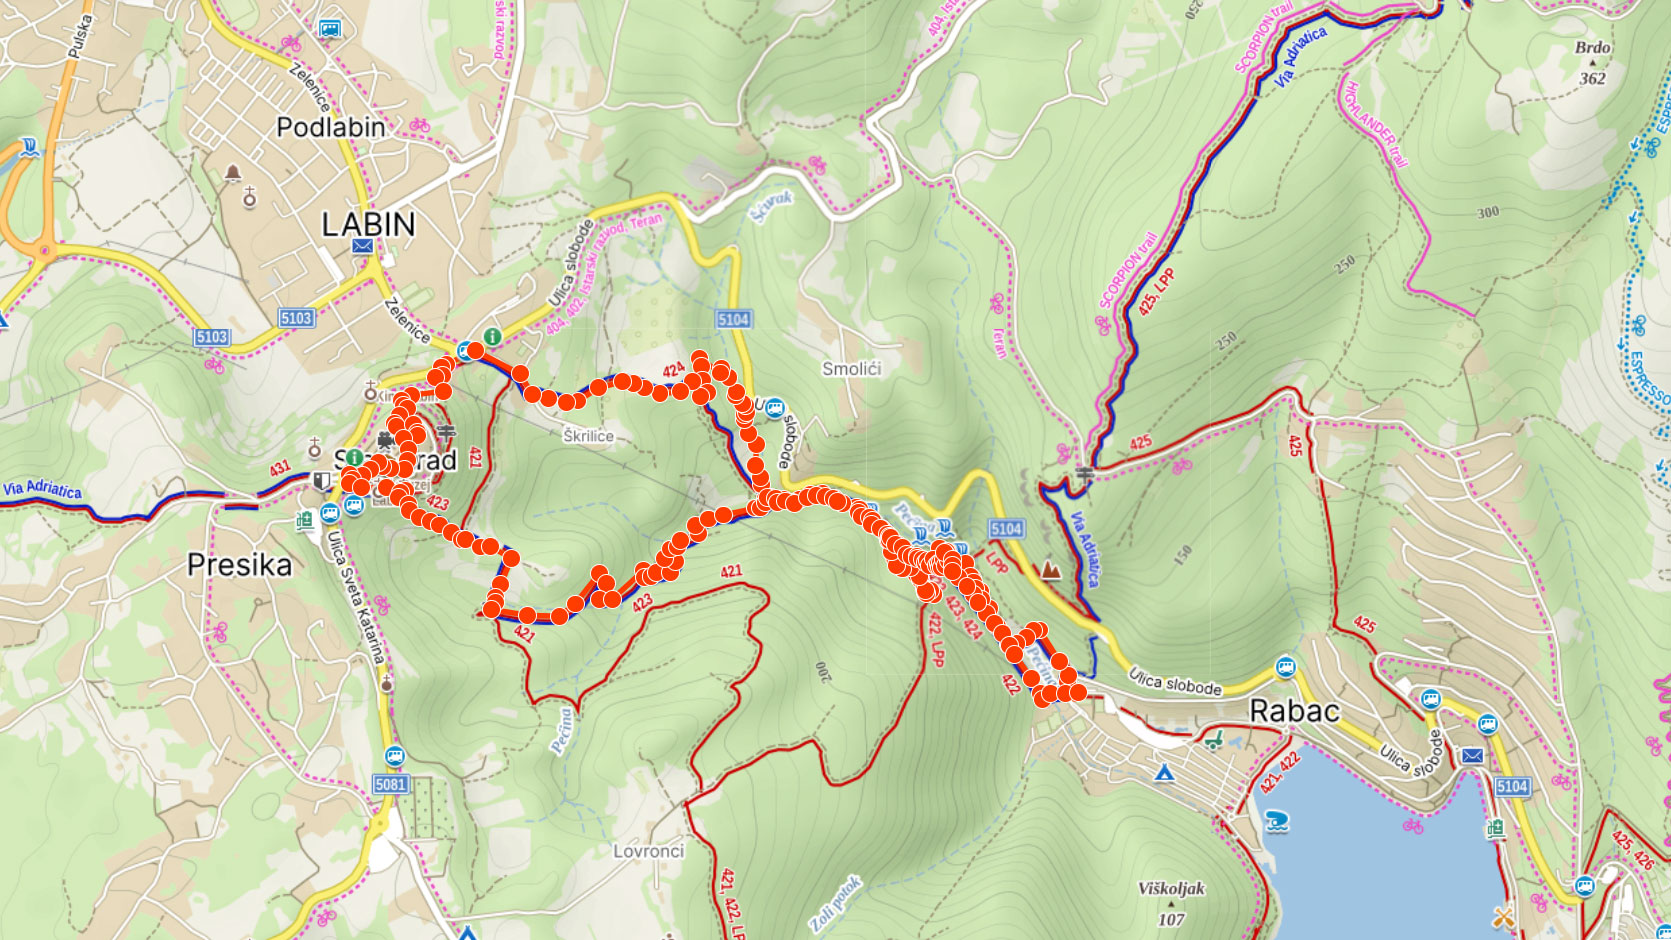 Mapa výletu k vodopádům u Rabace v Chorvatsku